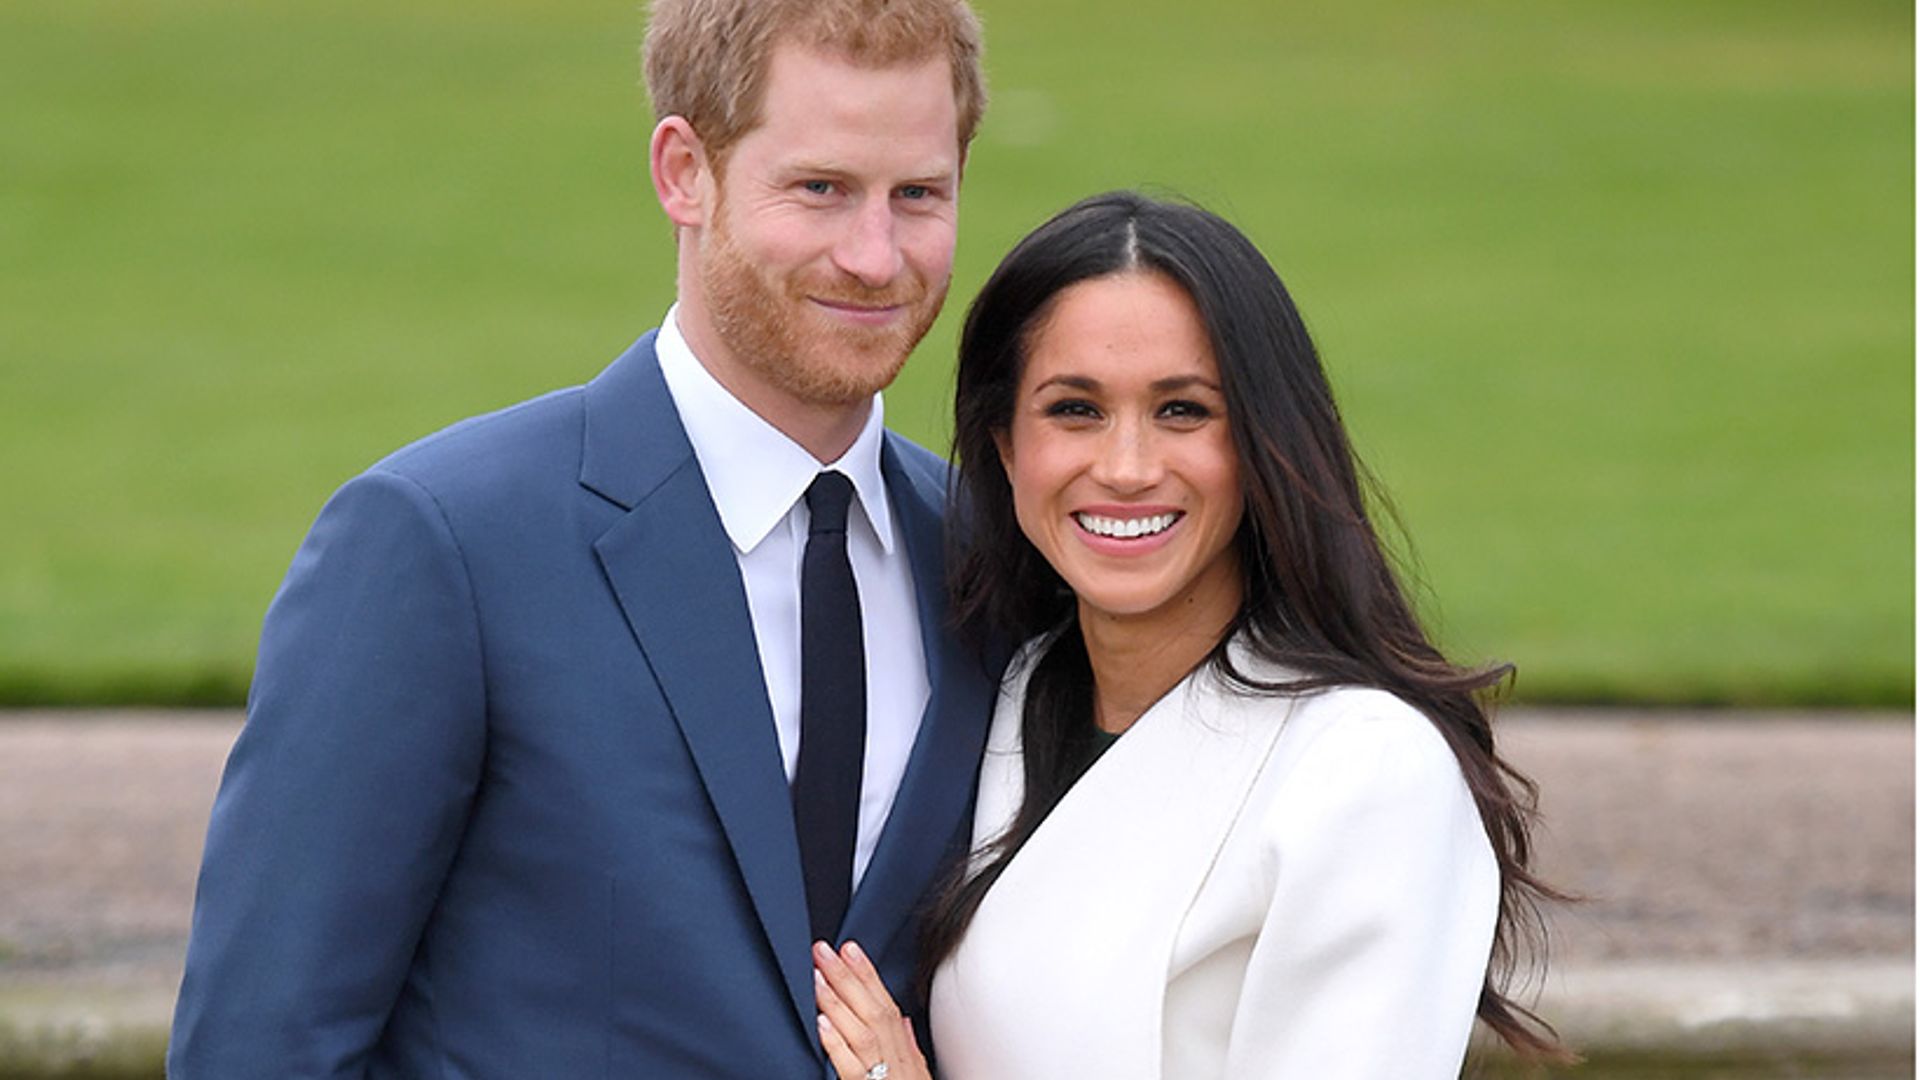 Prince Harry and Meghan Markle announce their royal wedding florist